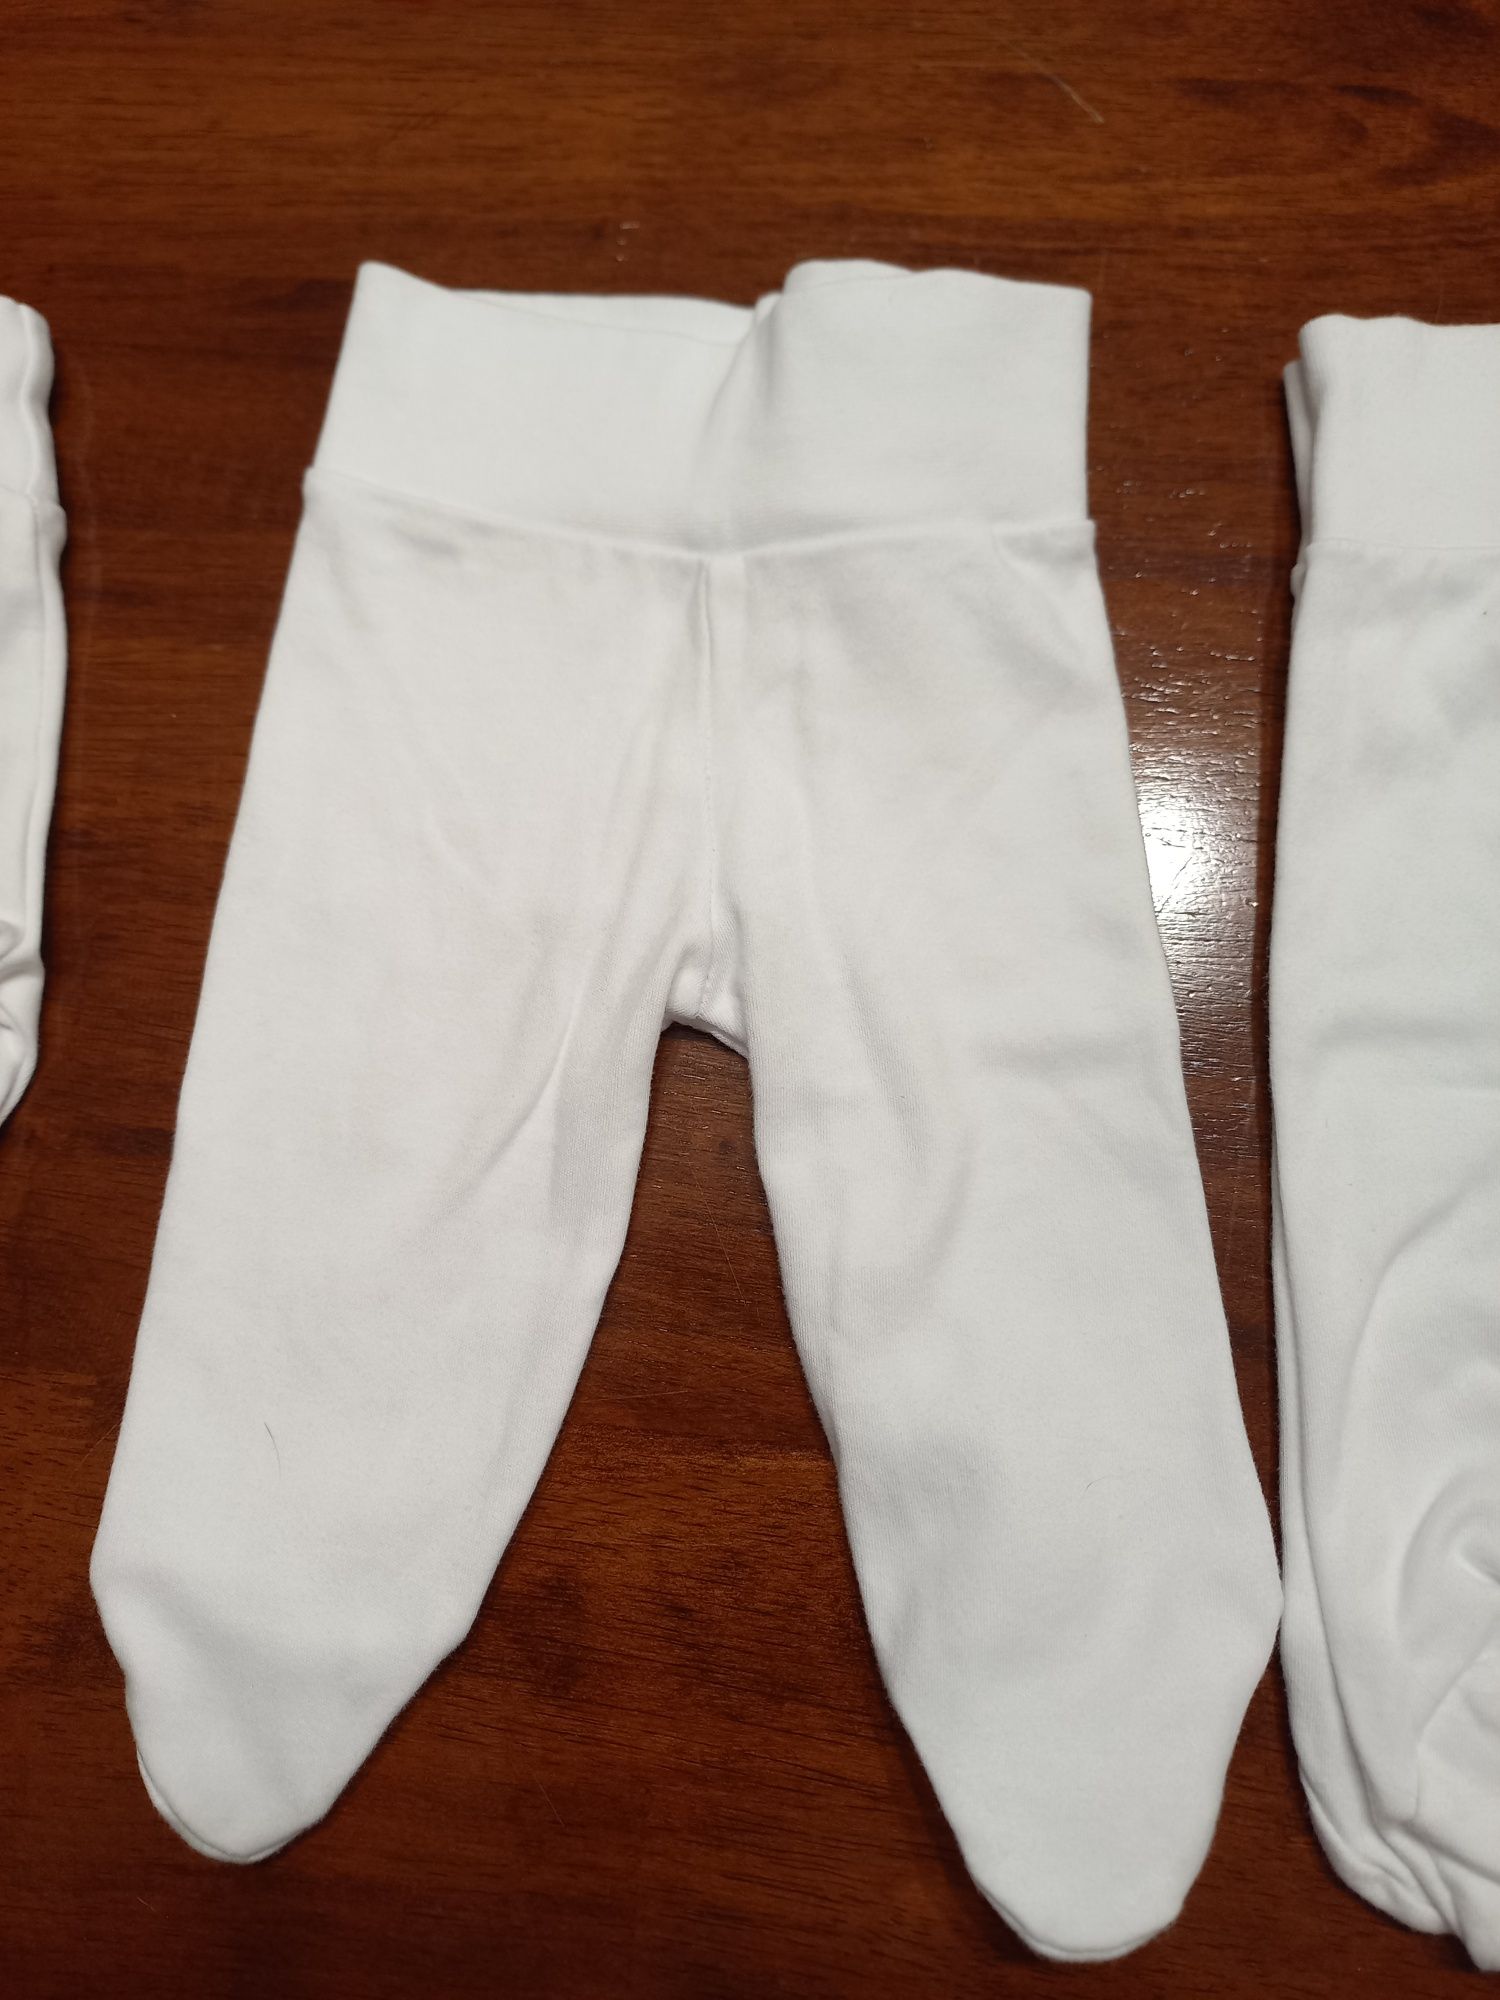 4 calças brancas com pé (1-3meses)

As calças são unisexo, não tem qua